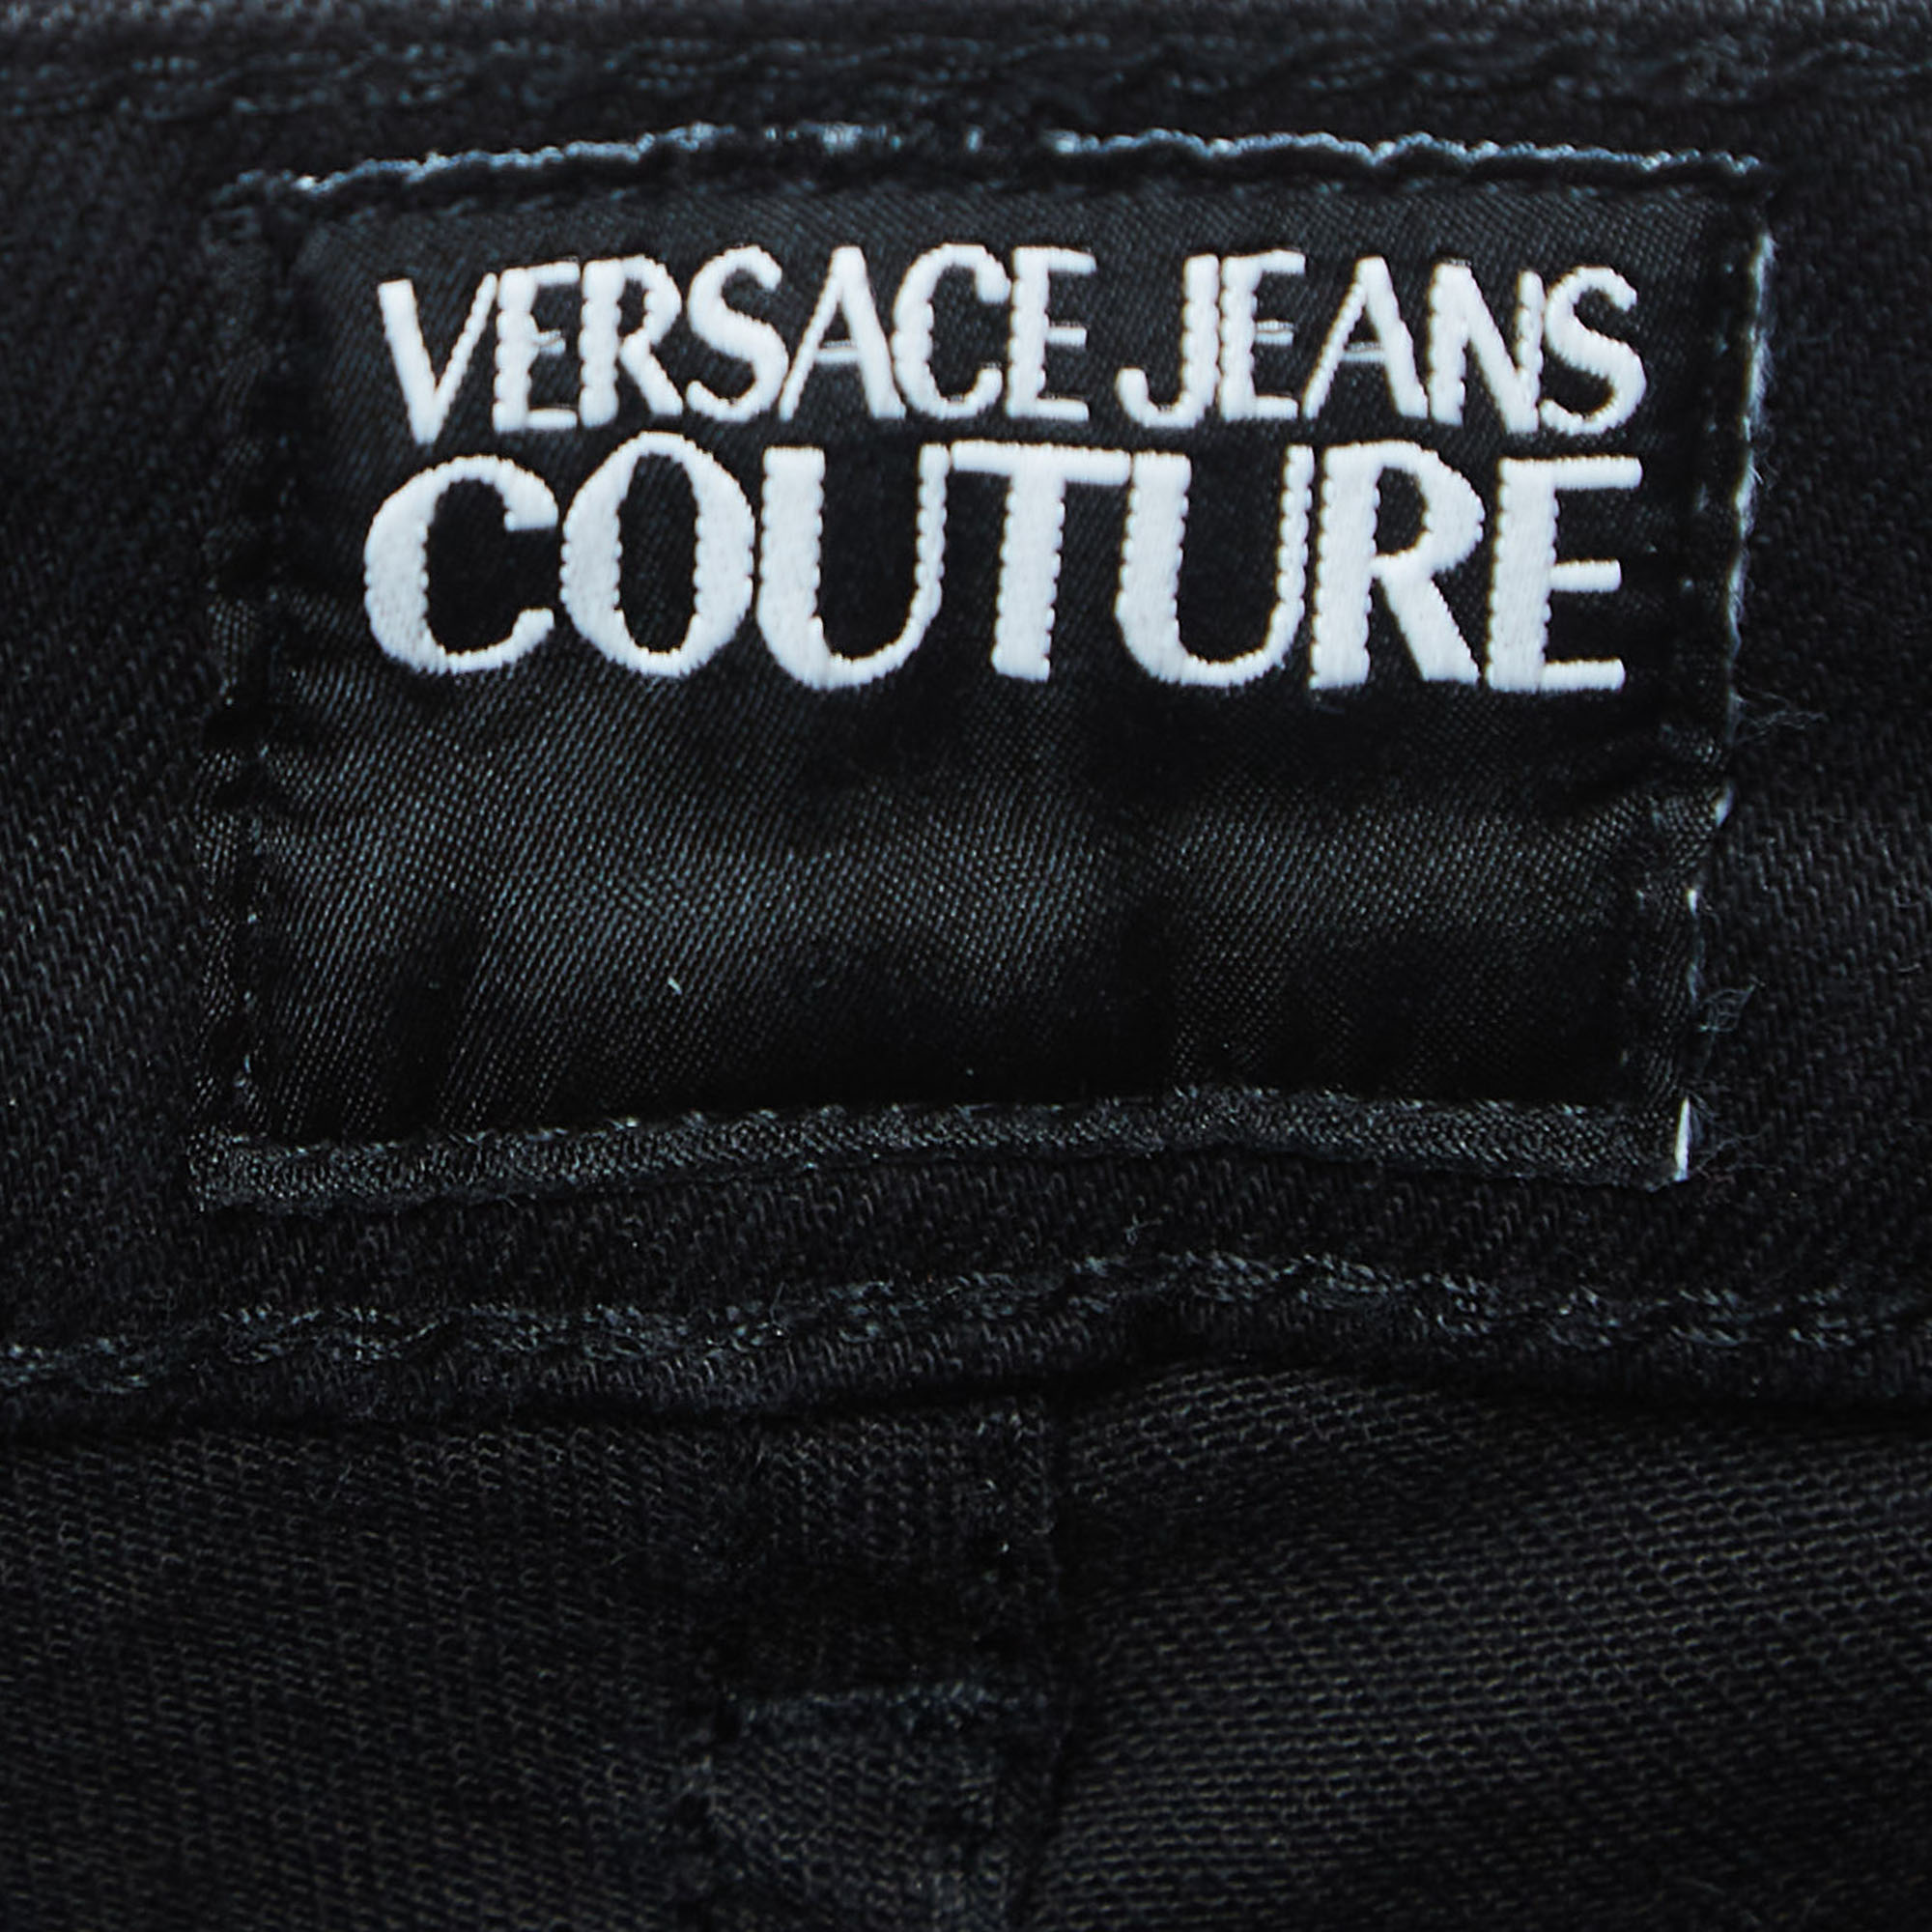 Versace Jeans Couture Black Denim Slim Fit Jeans M Waist 30